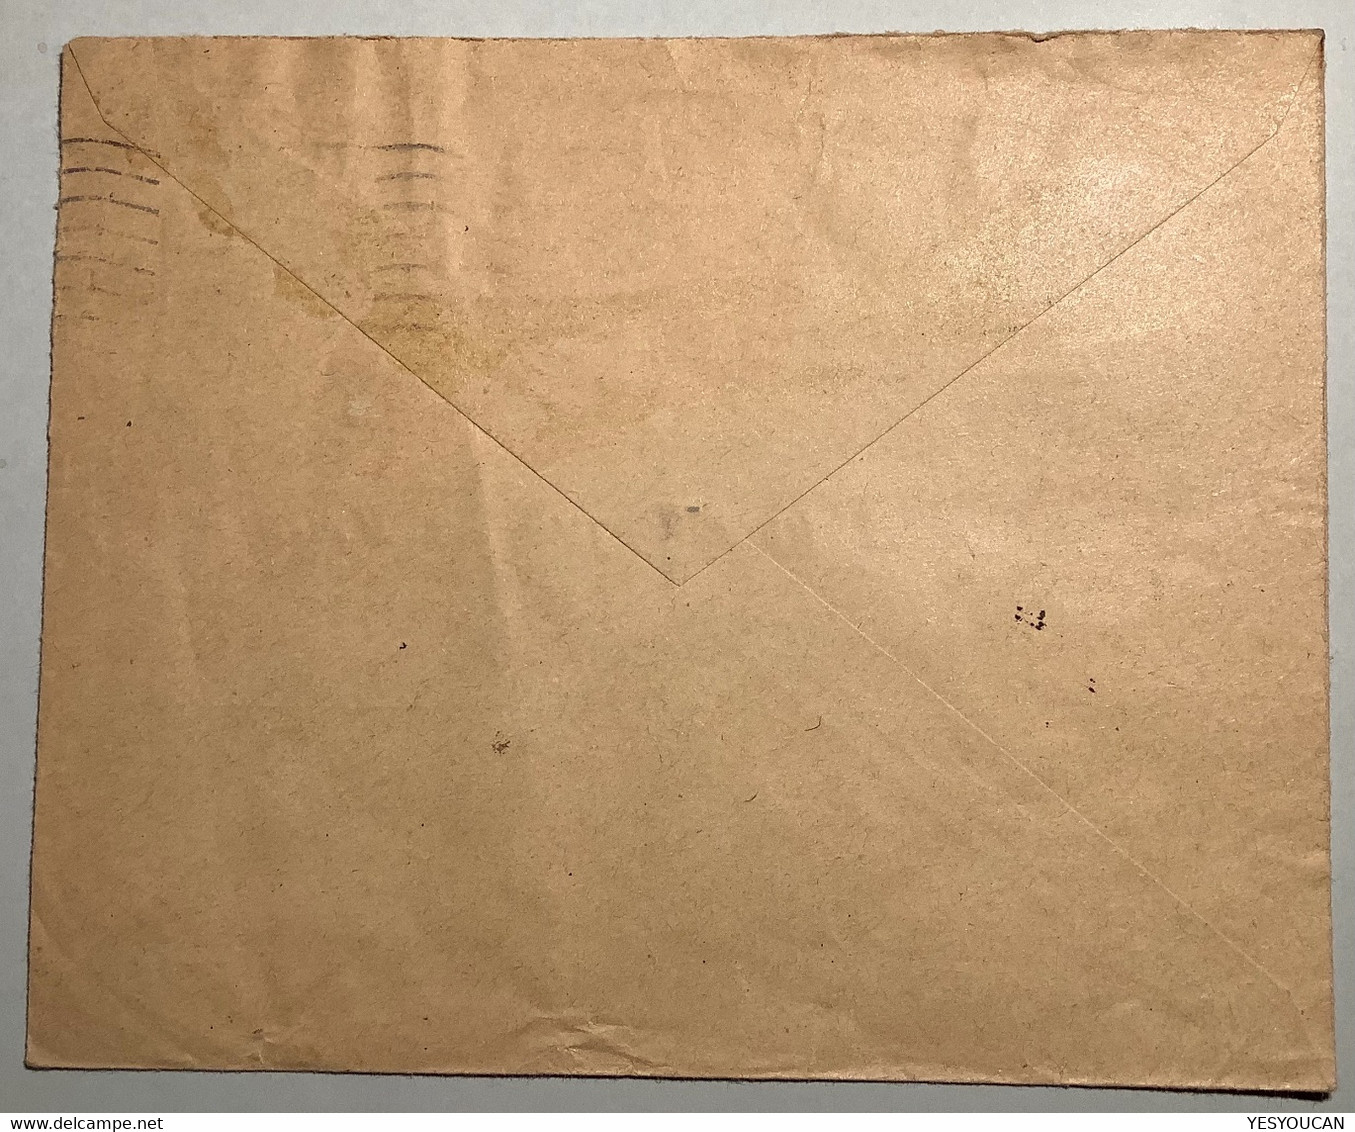 LYON "R.F" LIBERATION Oblit RARE "ST ETIENNE LOIRE 1944"lettre Non Philatelique Banque De France Pétain(WW2 War Guerre - Liberación